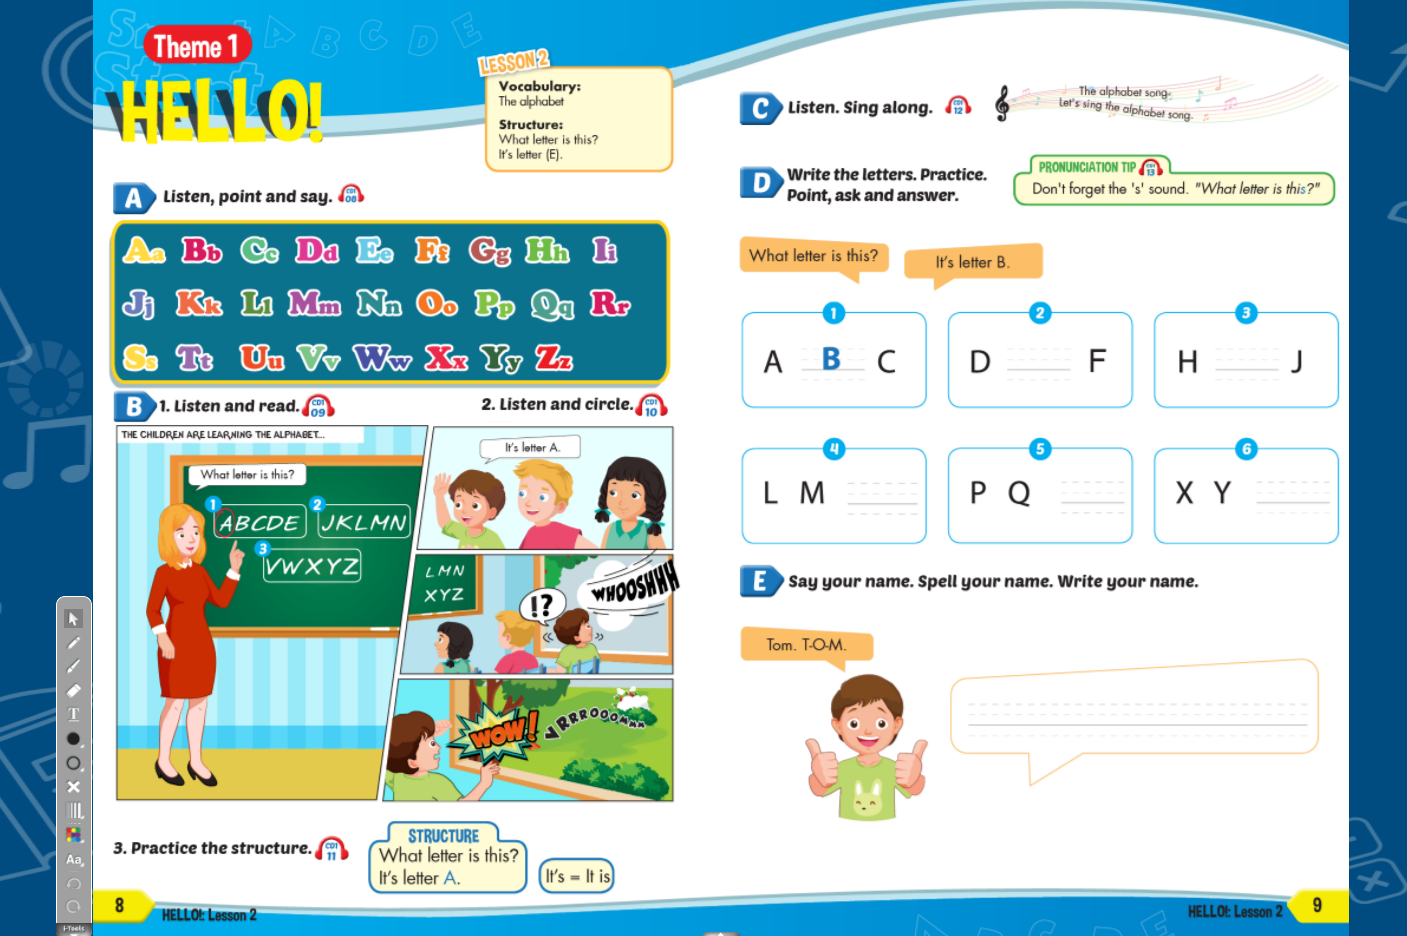 [APP] i-Learn Smart Start Grade 3 - Ứng dụng phần mềm tương tác sách học sinh